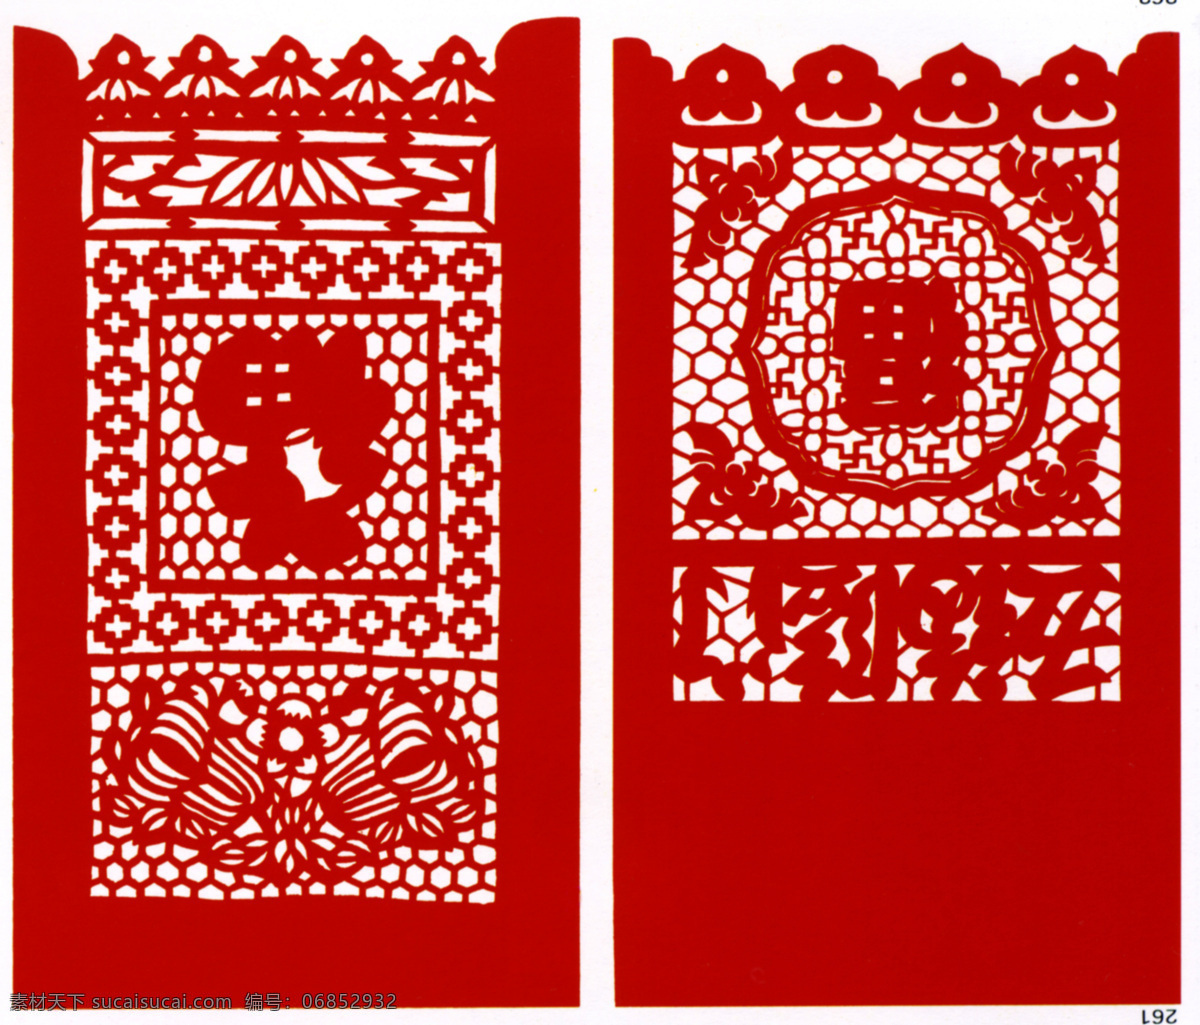 五福临门 传统素材 中国图案 吉祥图案 传统图案 中国设计 剪纸 窗花 传统 中国元素 中国风 图案 中国的传统 传统文化 文化艺术 中国剪纸素材